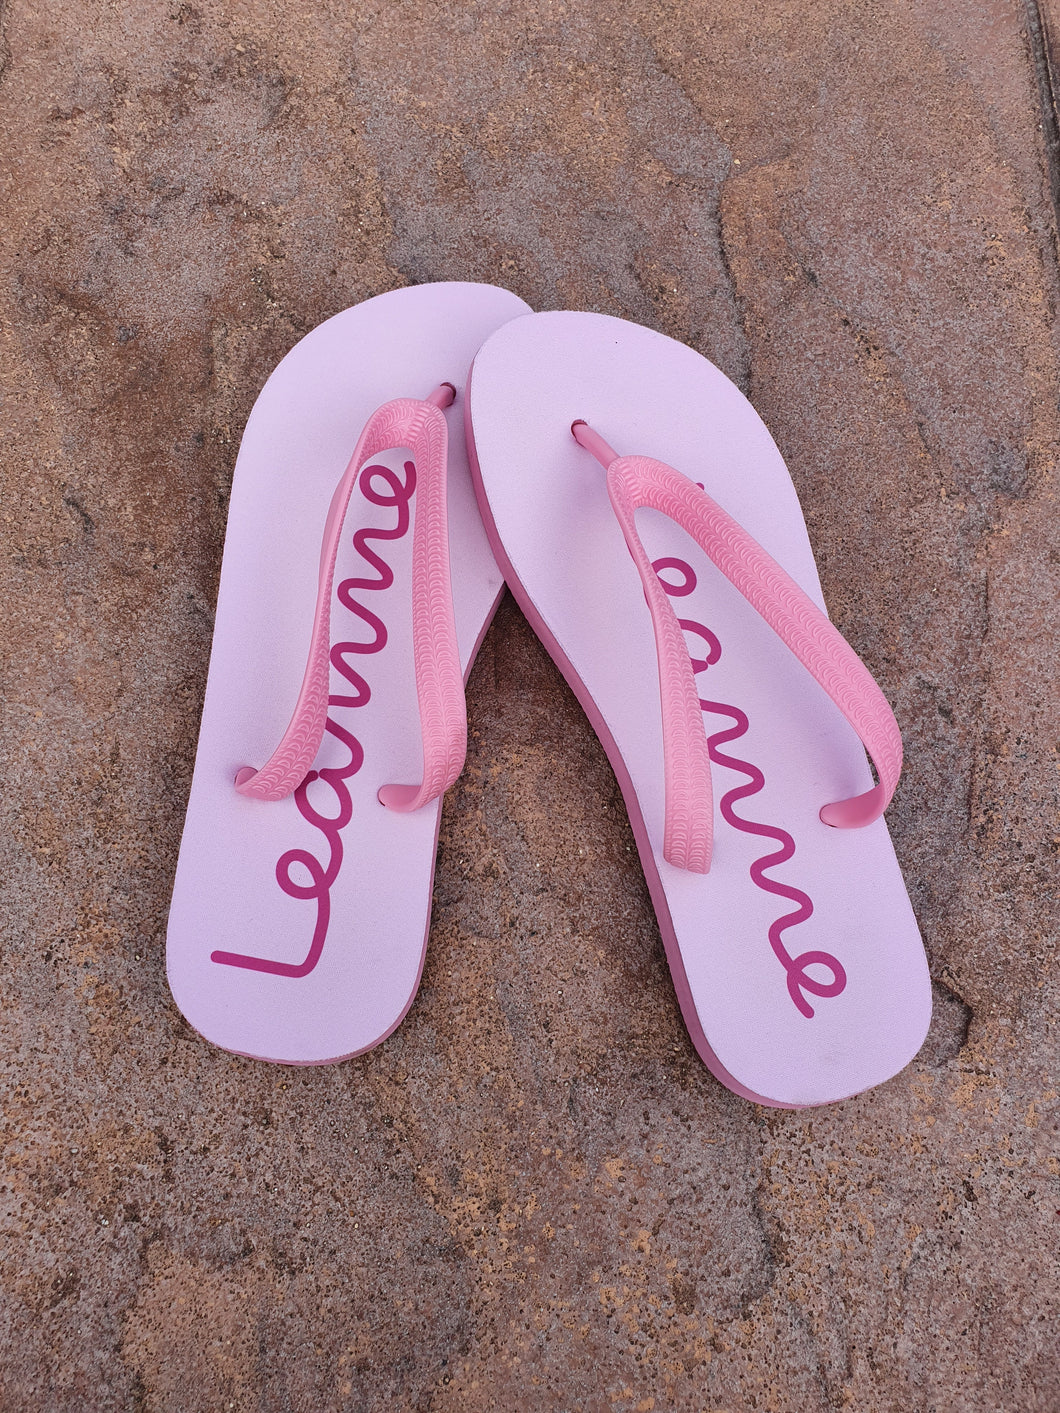 Personalised Flip Flops || Ladies || Kids || PINK or BLACK || Island Style.